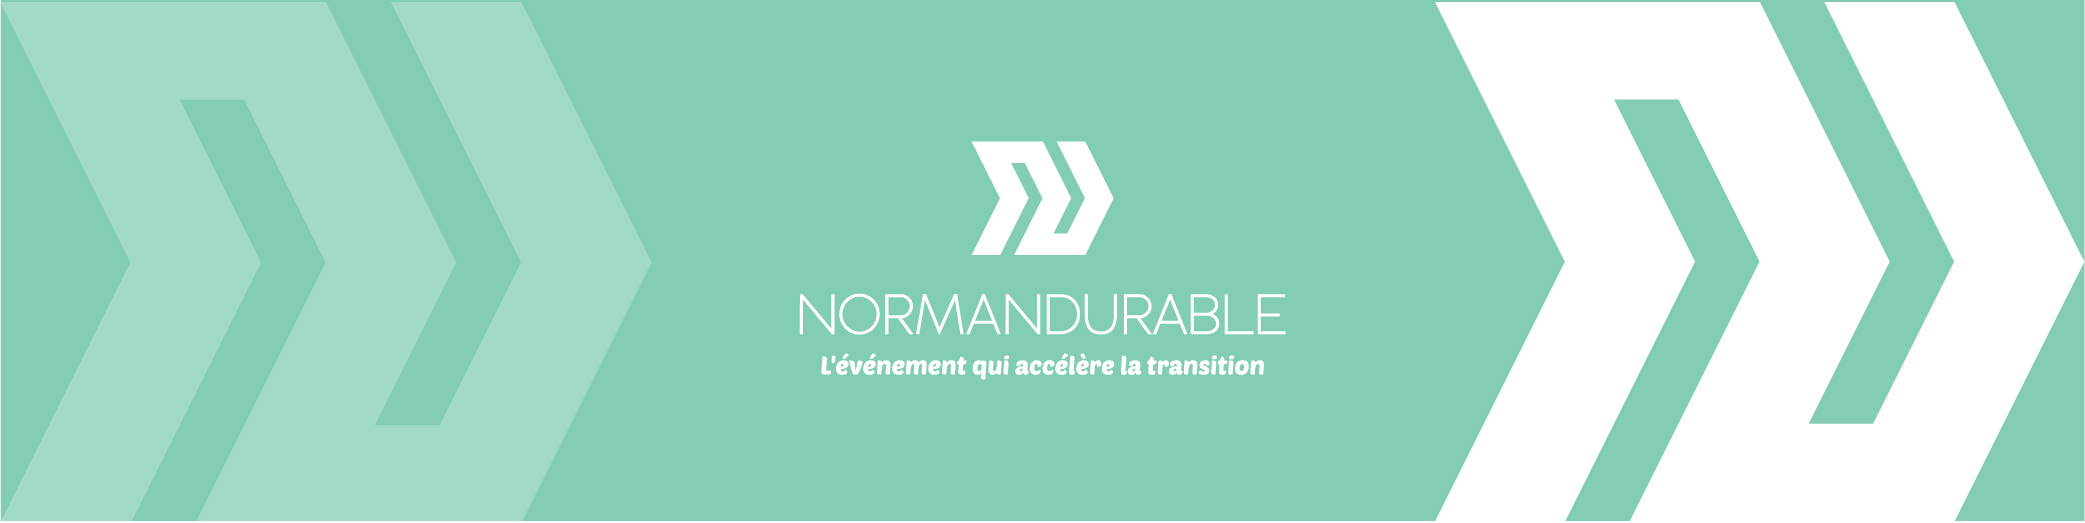 You are currently viewing Le normandurable, l’évènement qui accélère la transition !